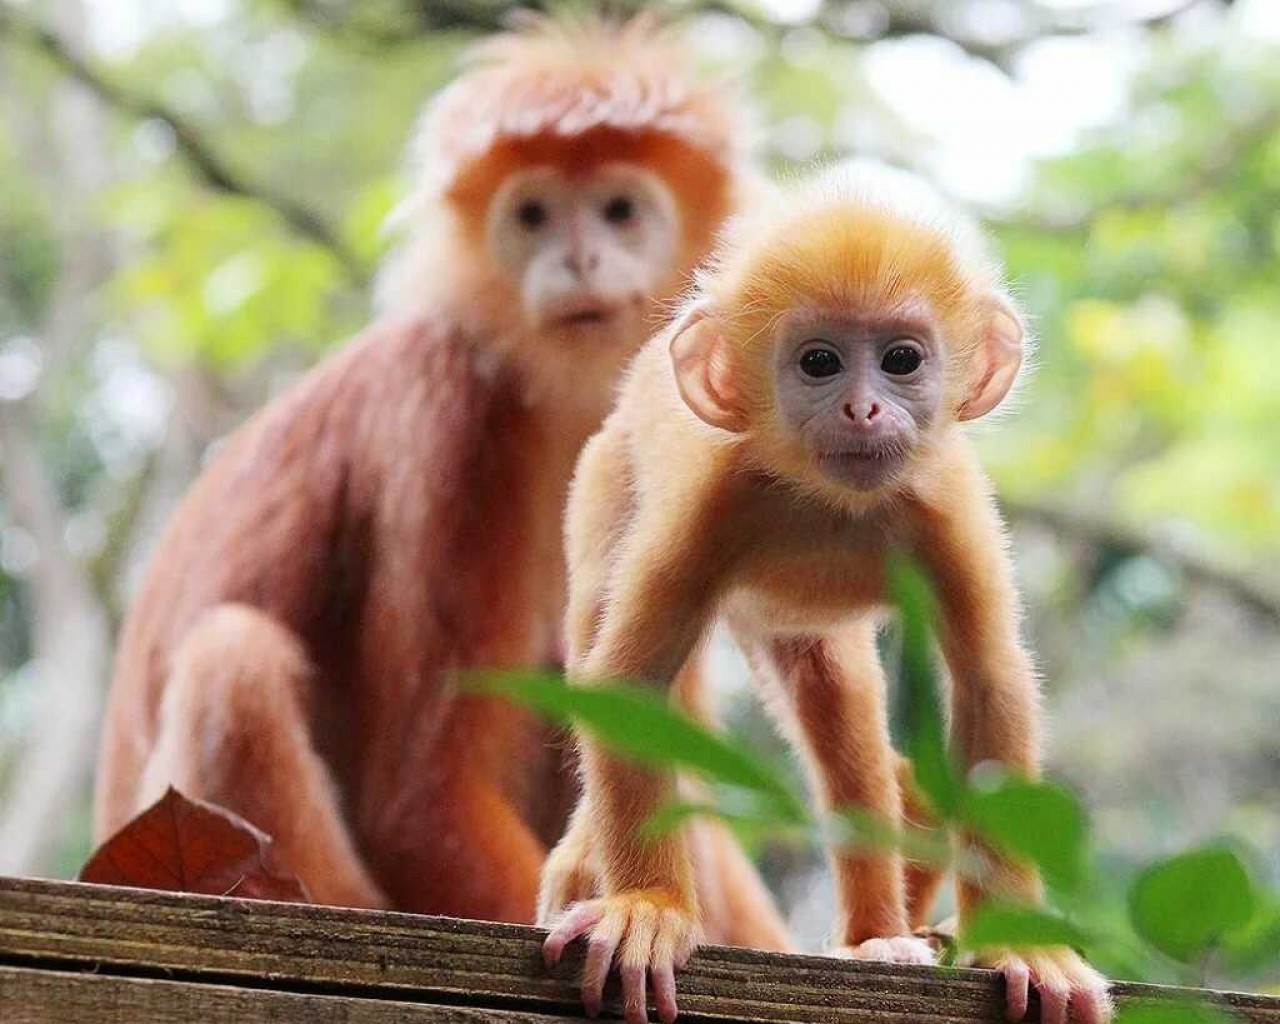 Пленительные кадры обезьяны - узнайте больше об удивительной жизни этих приматов